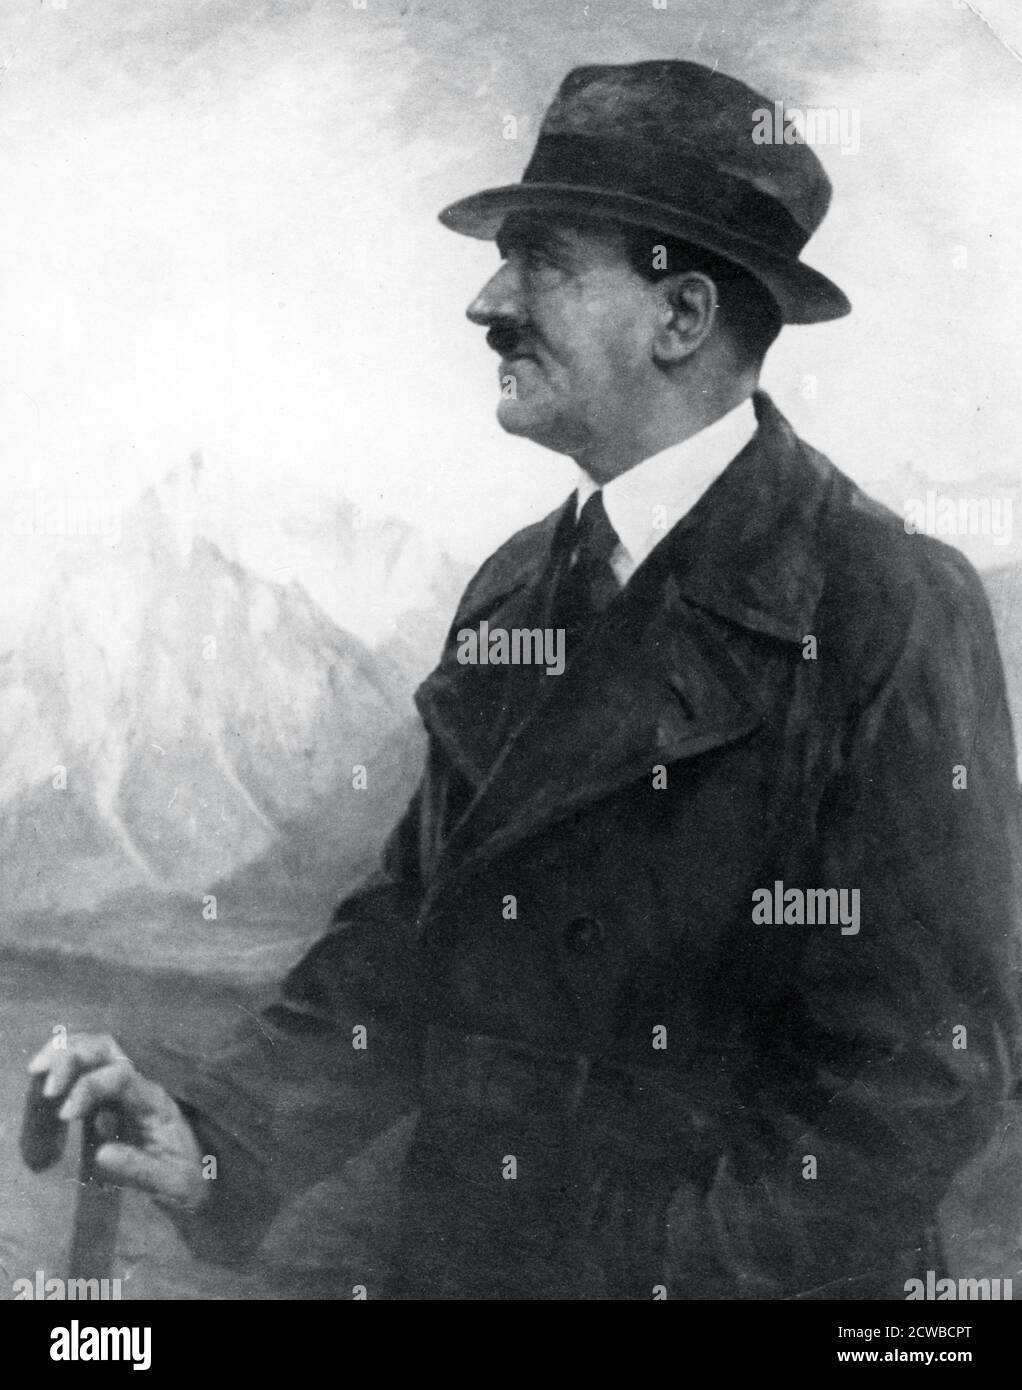 Adolf Hitler Entspannung in Berchtesgaden, Bayerische Alpen, Deutschland, c1933-1945. Berchtesgaden war Hitlers Lieblingsretreat in Berghof, das er 1933 erwarb. Der Fotograf ist unbekannt. Stockfoto